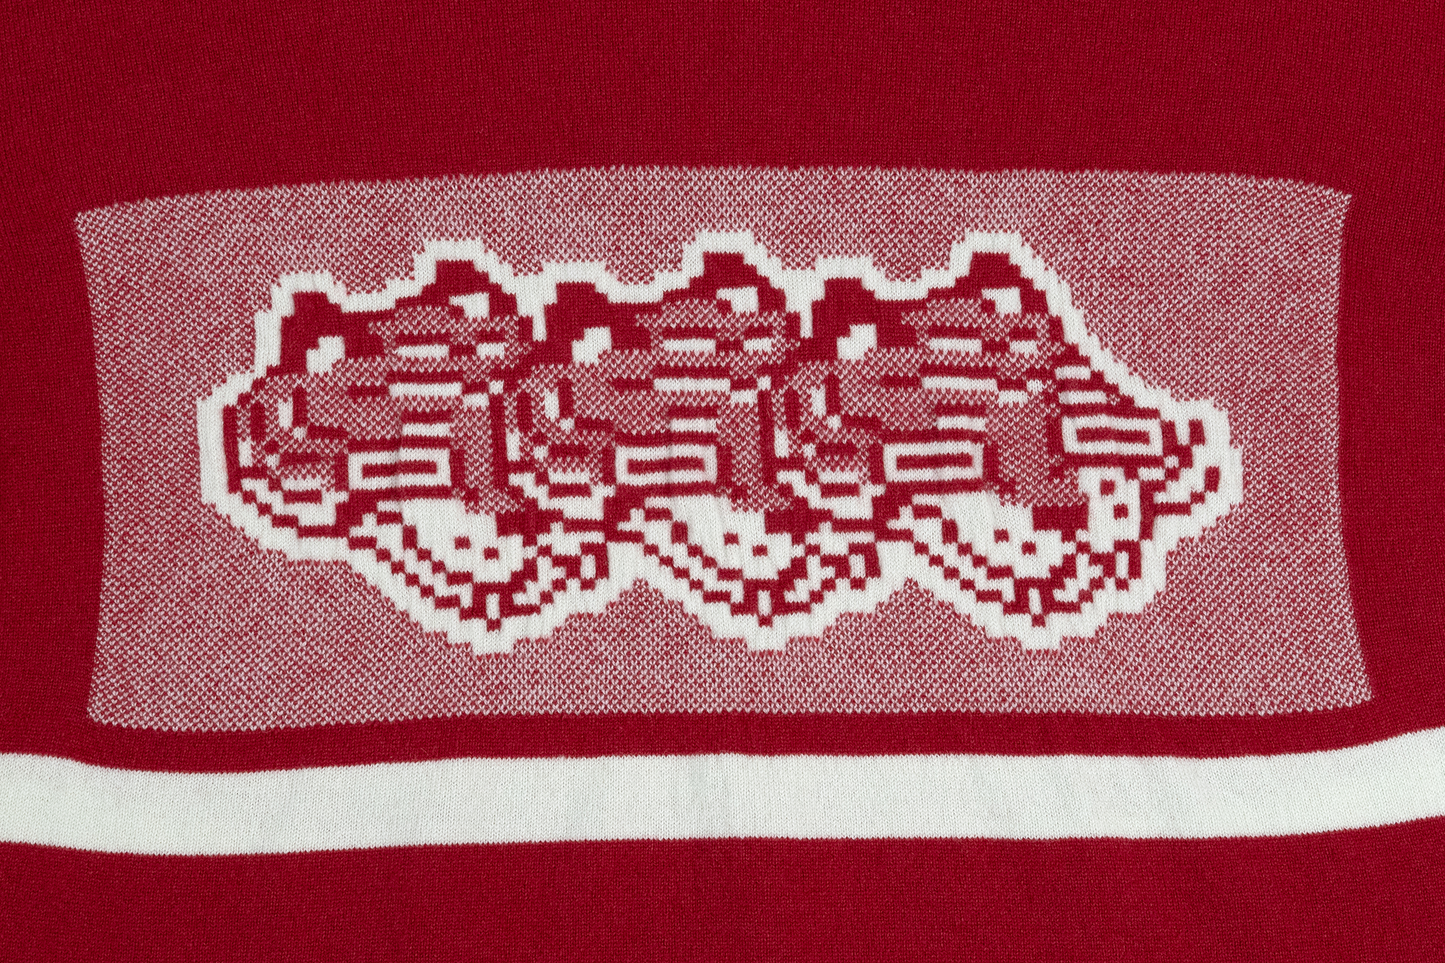 Intarsia Knit Boxy Tshirt // Bean/Frost